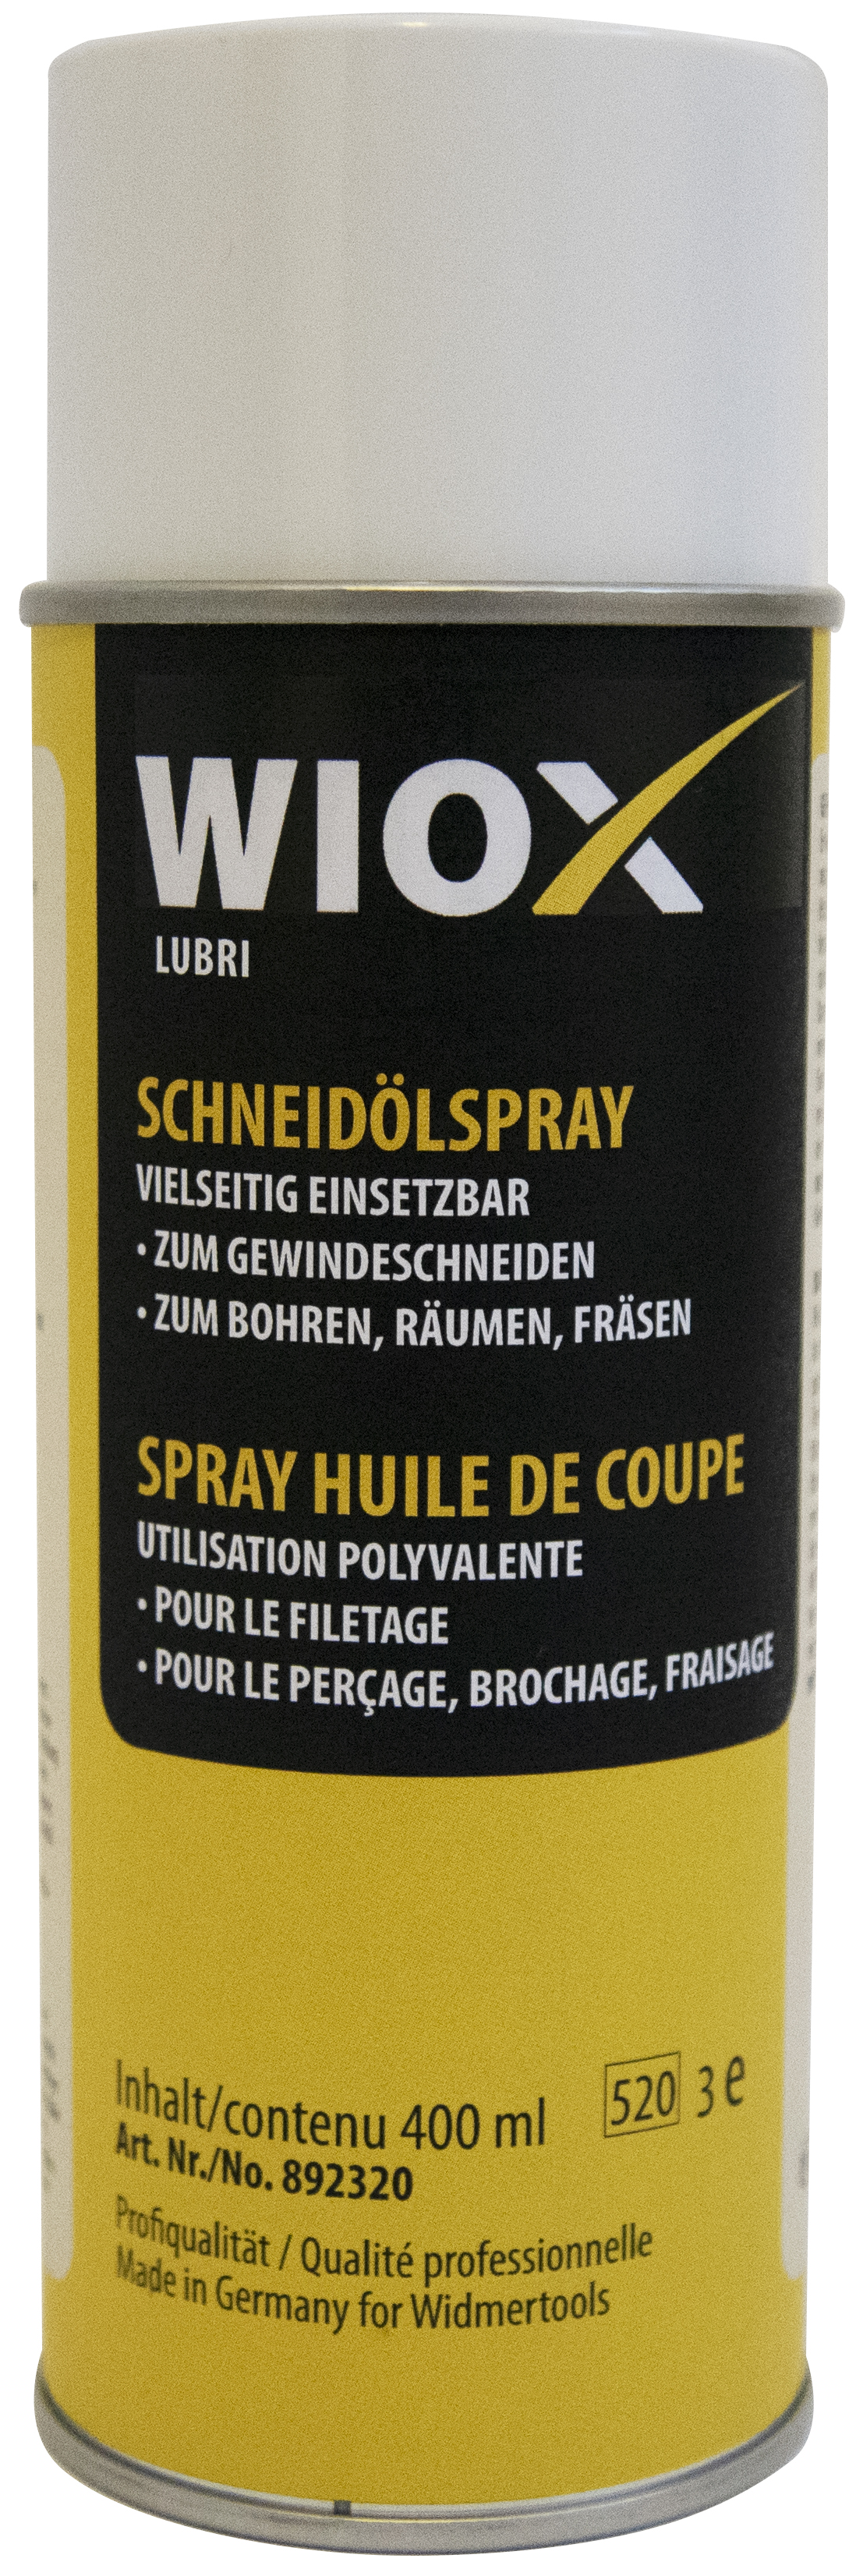 Spray huile de coupe WIOX 400ml